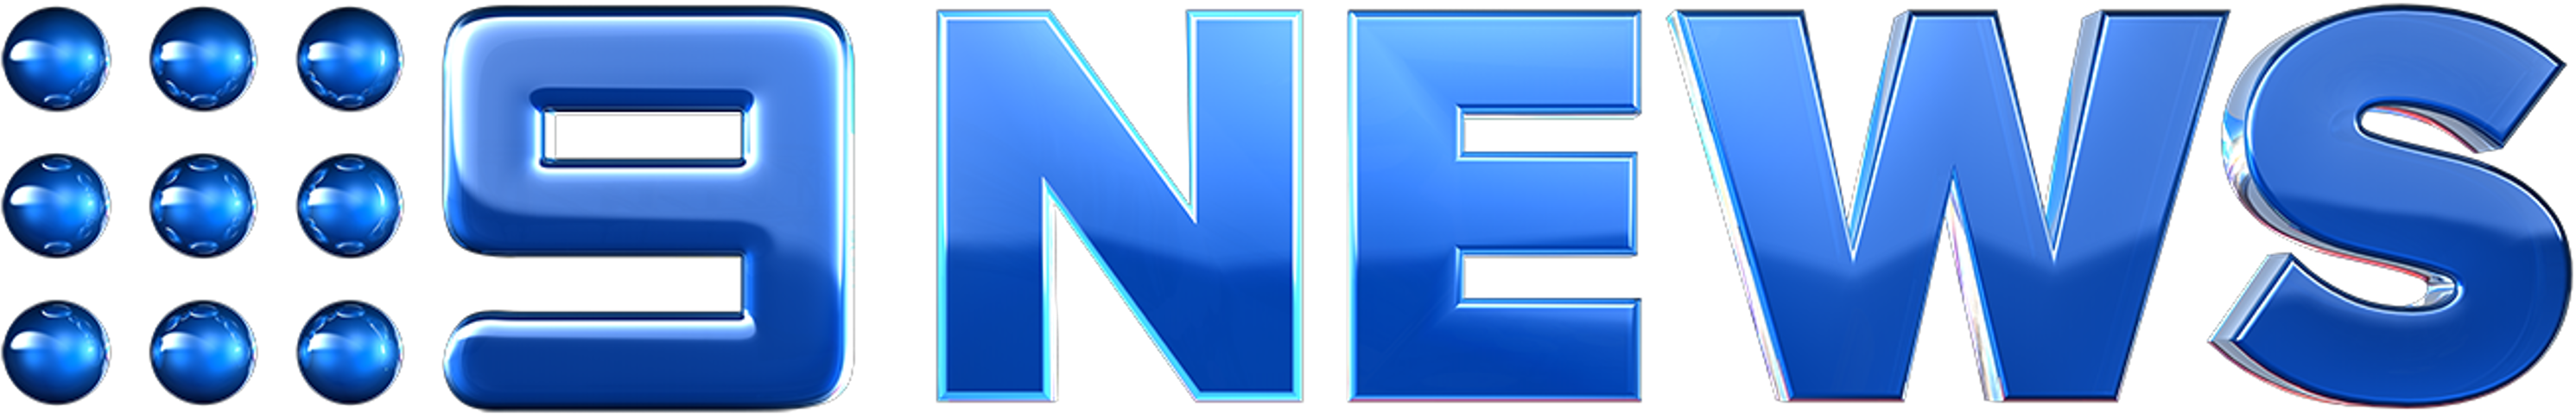 Nine News | Logopedia | FANDOM powered by Wikia